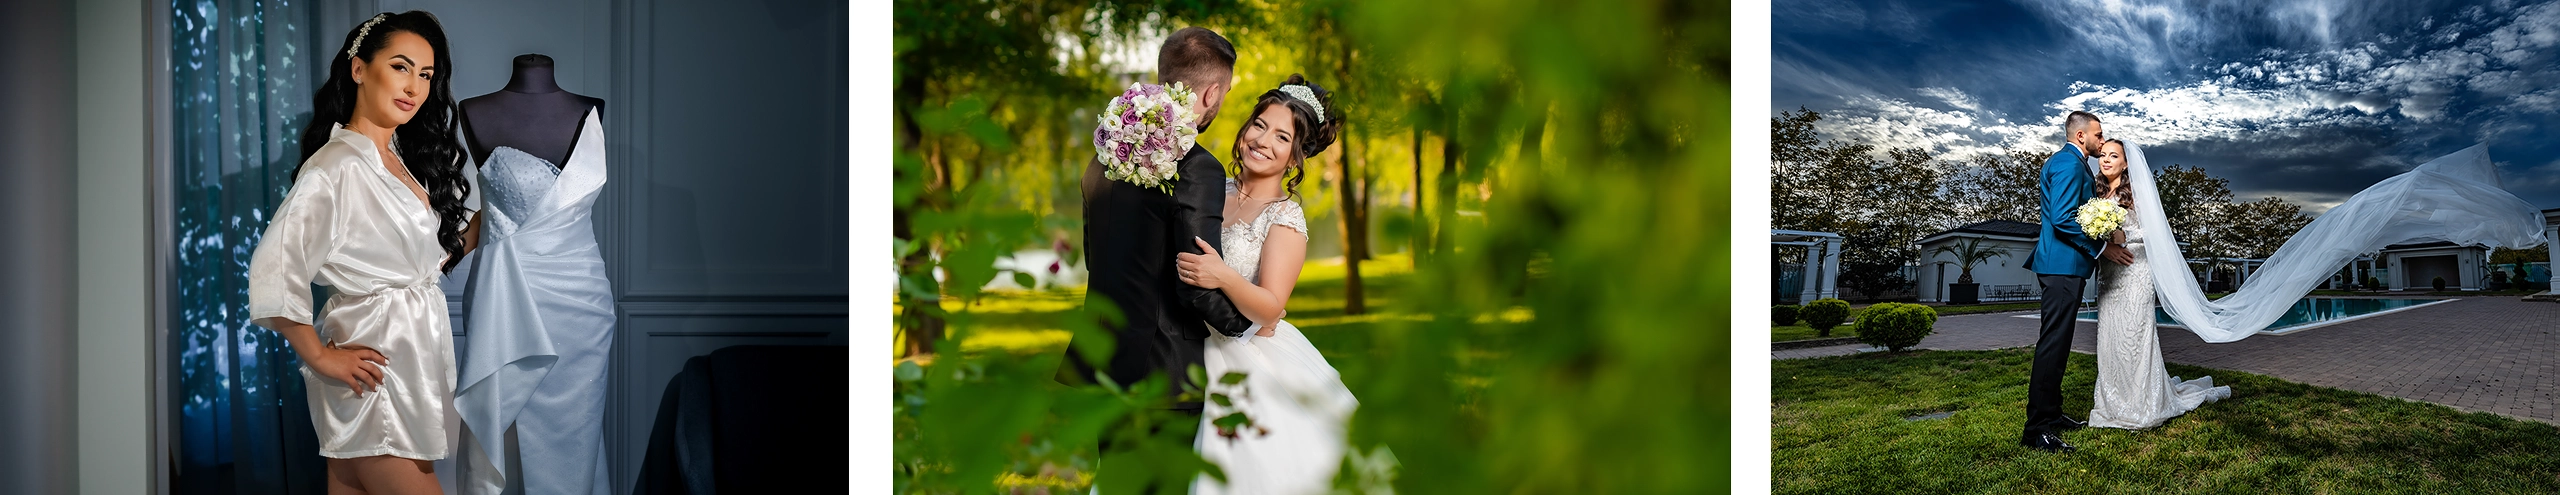 Fotografie nuntă - Fotograf de nunta Timisoara - Servicii foto profesonale - Fotograf Paul Mos